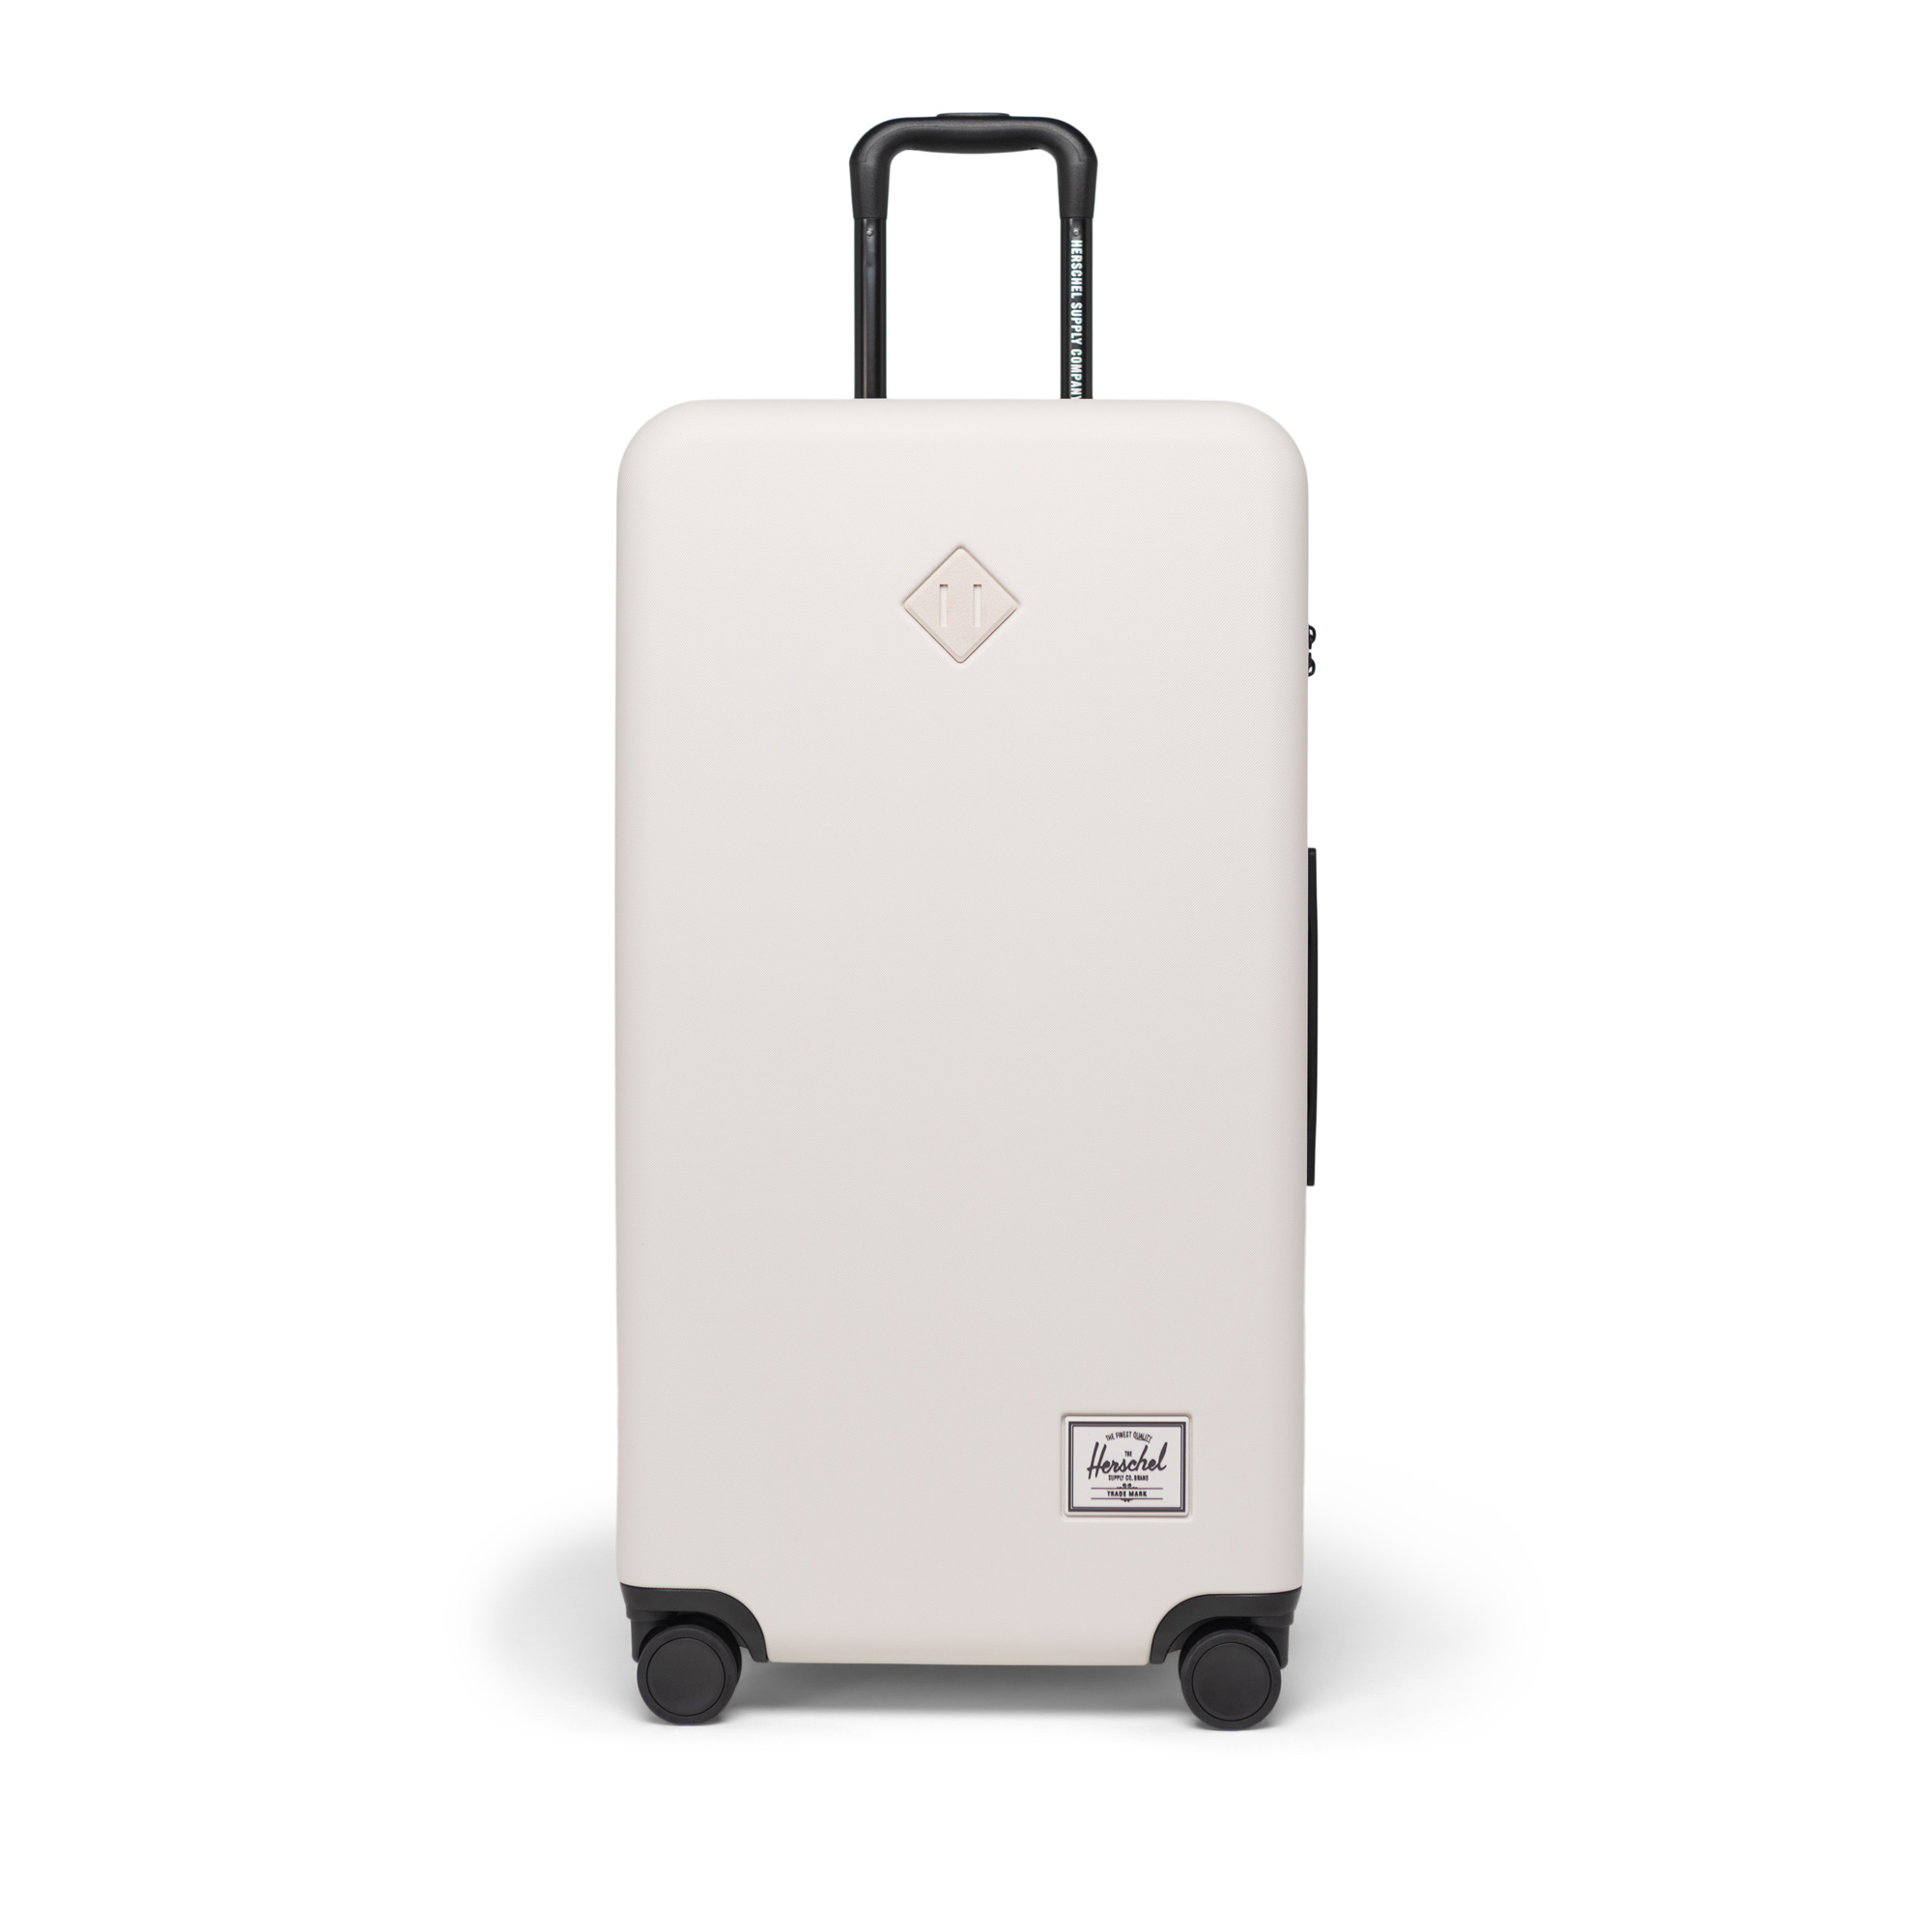 Travel Luggage Organizers | Herschel Supply Co.